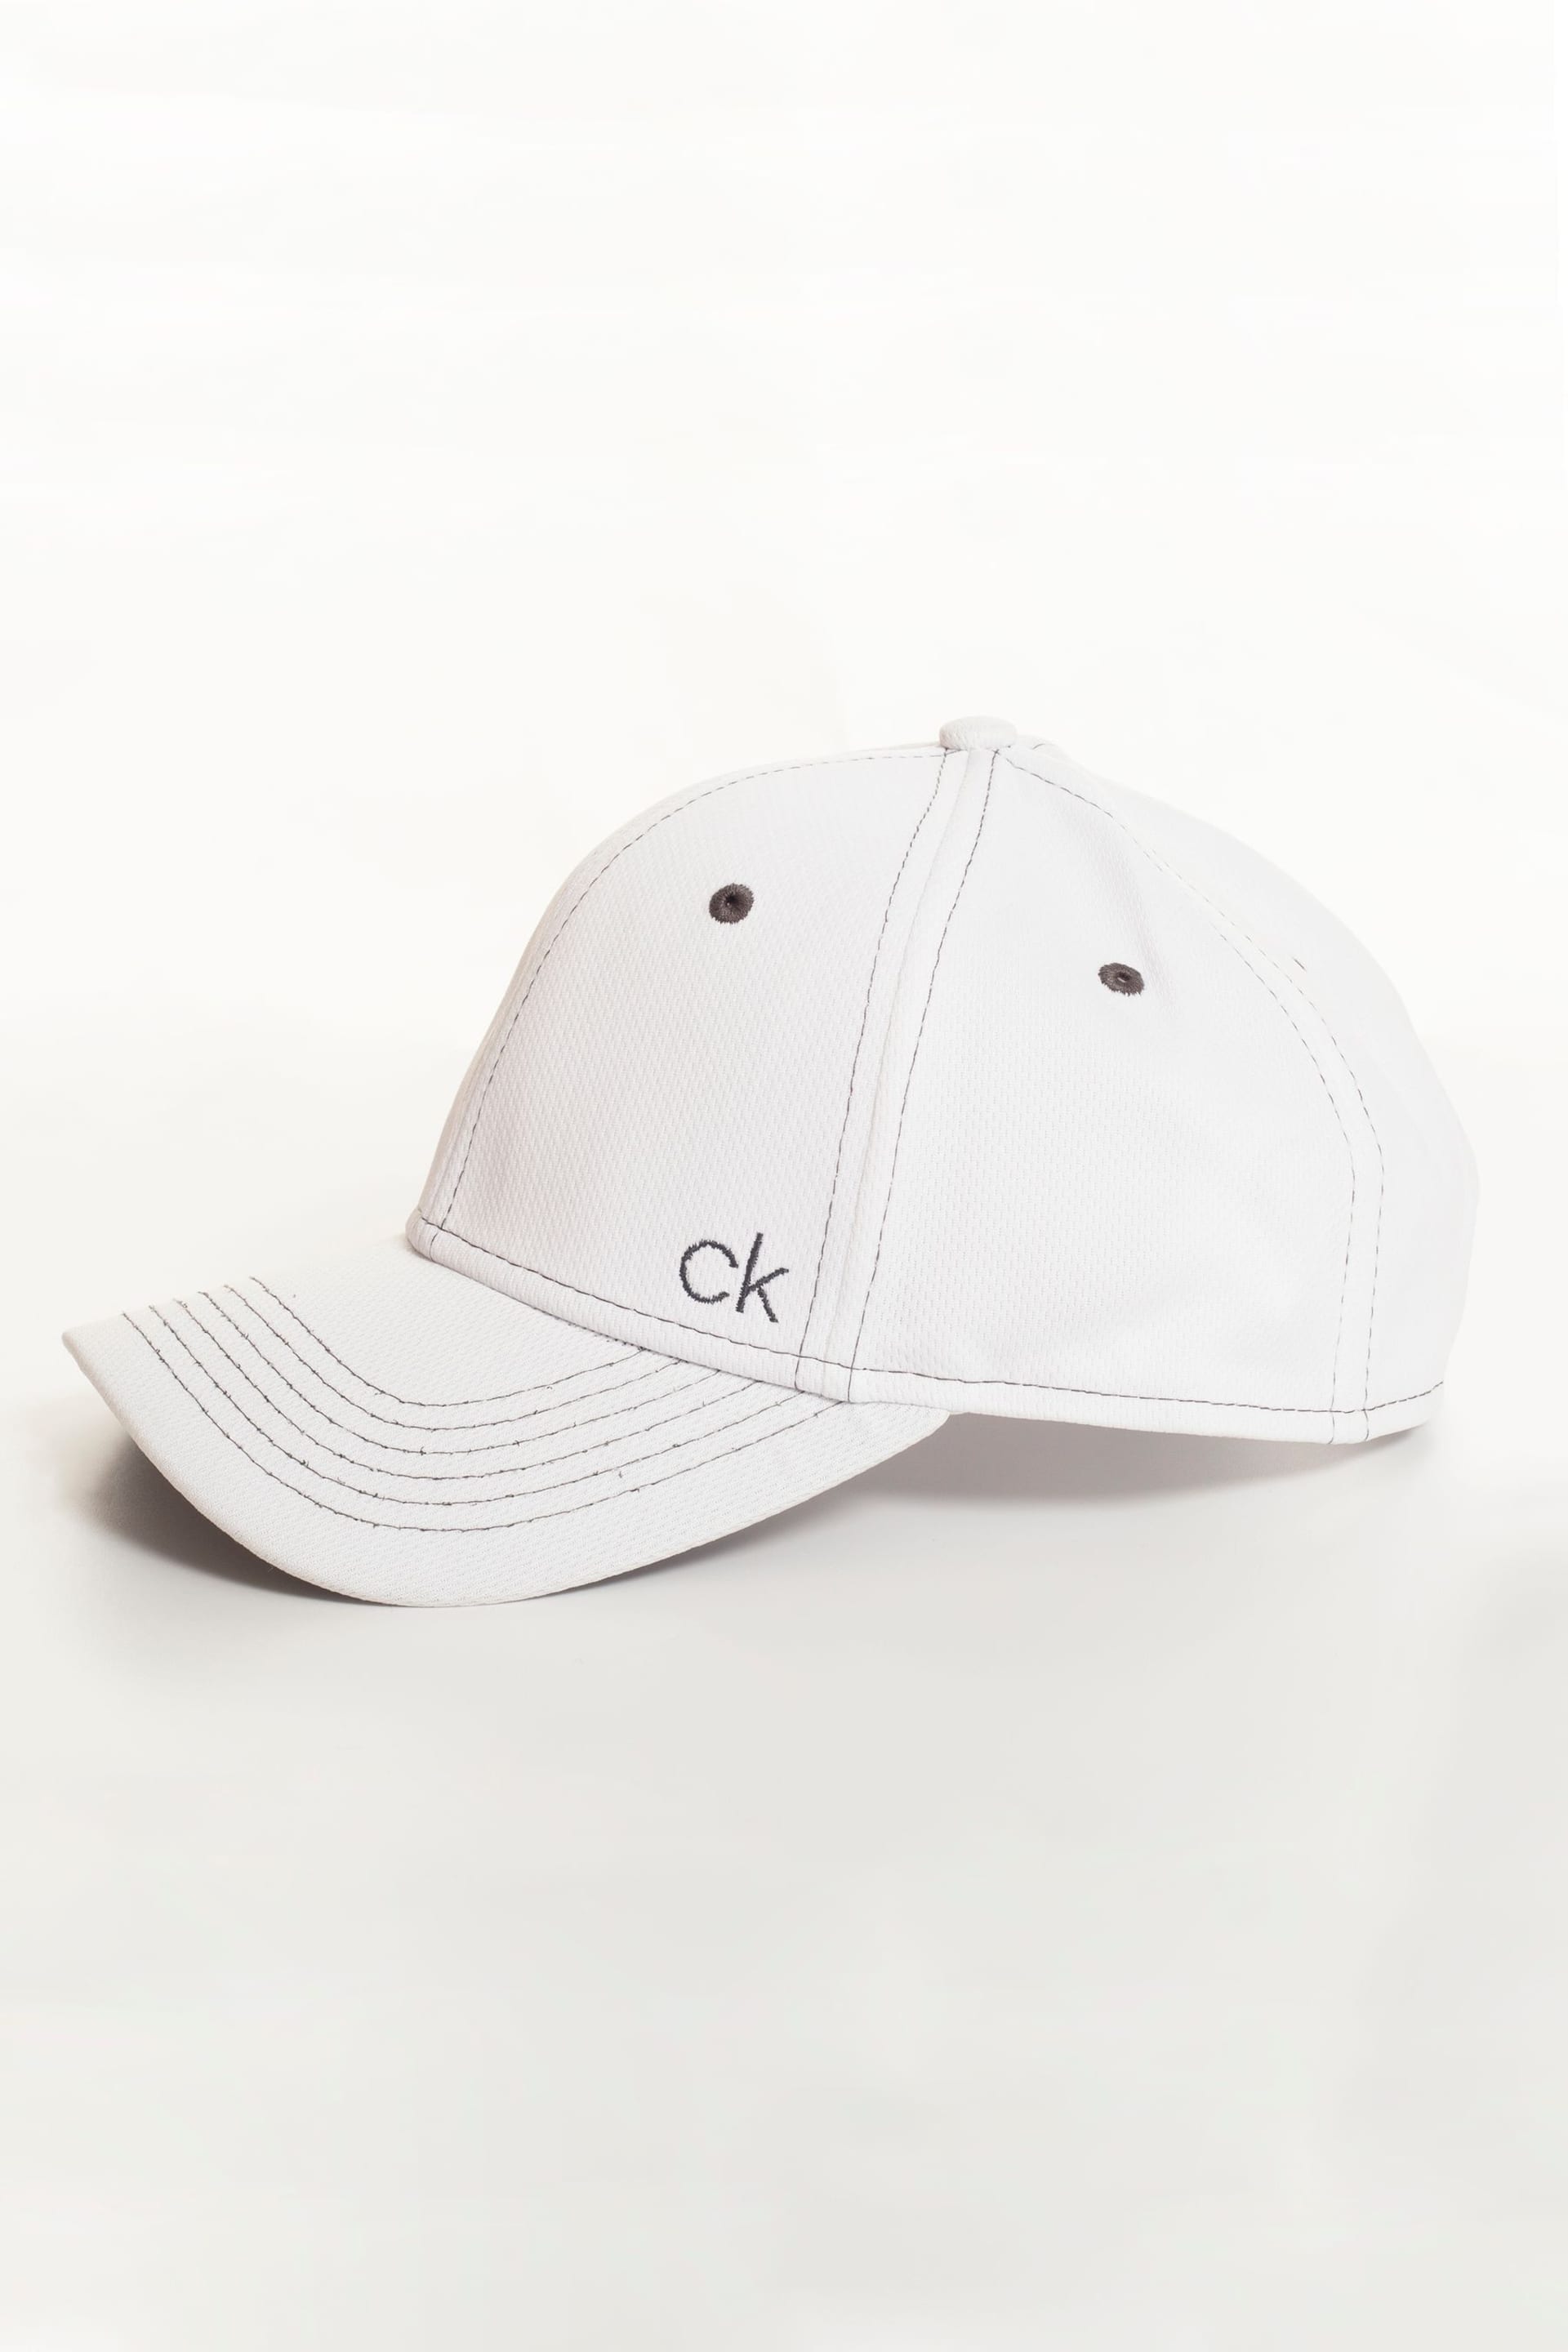 Calvin Klein Golf Tech Baseball White Cap - Image 2 of 5